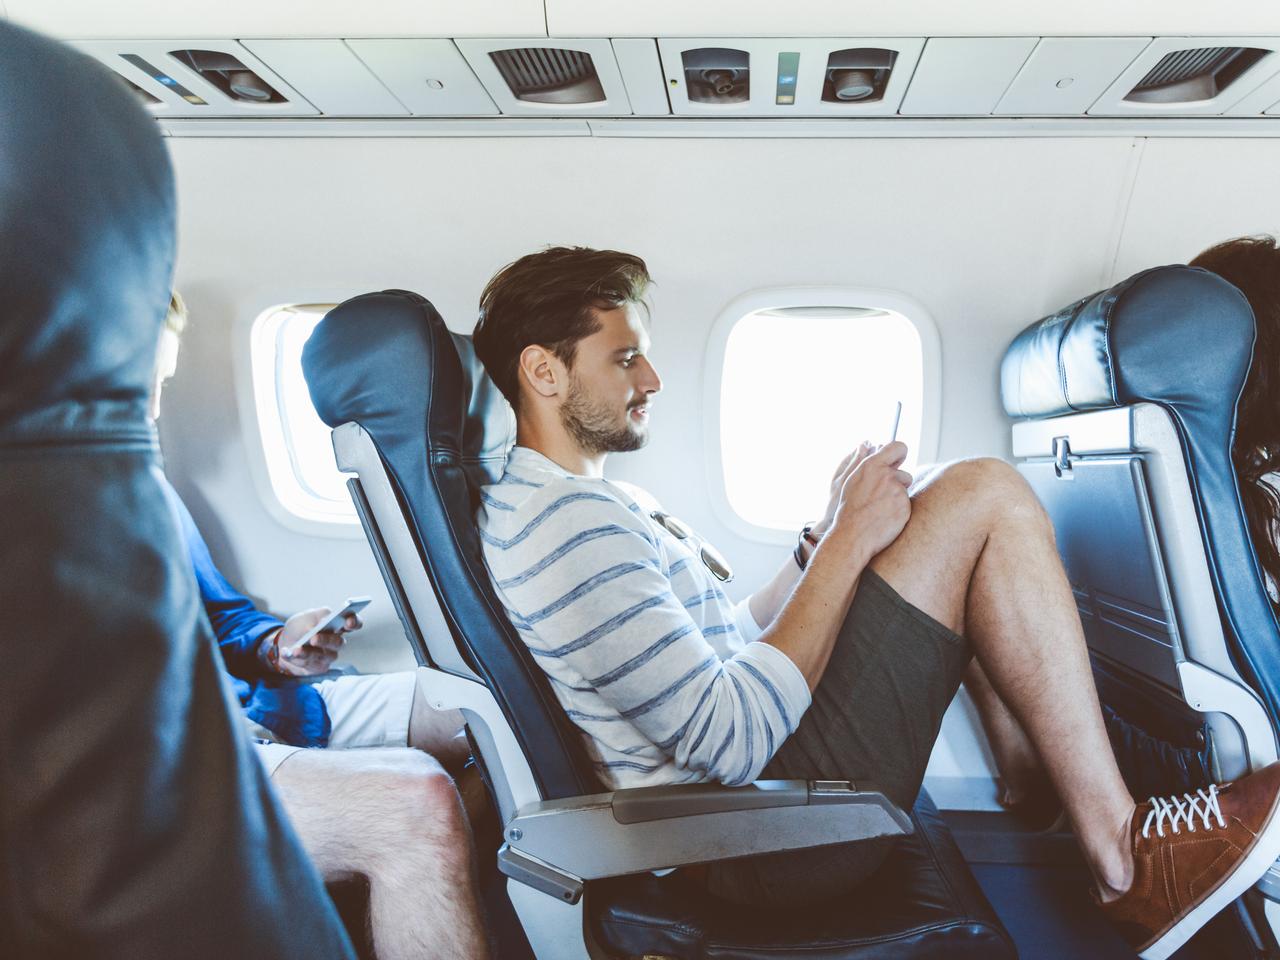 لماذا يجب عليك أن تحجز أسوأ مقعد في الطائرة؟ خبير سفر يشرح السبب watanserb.com